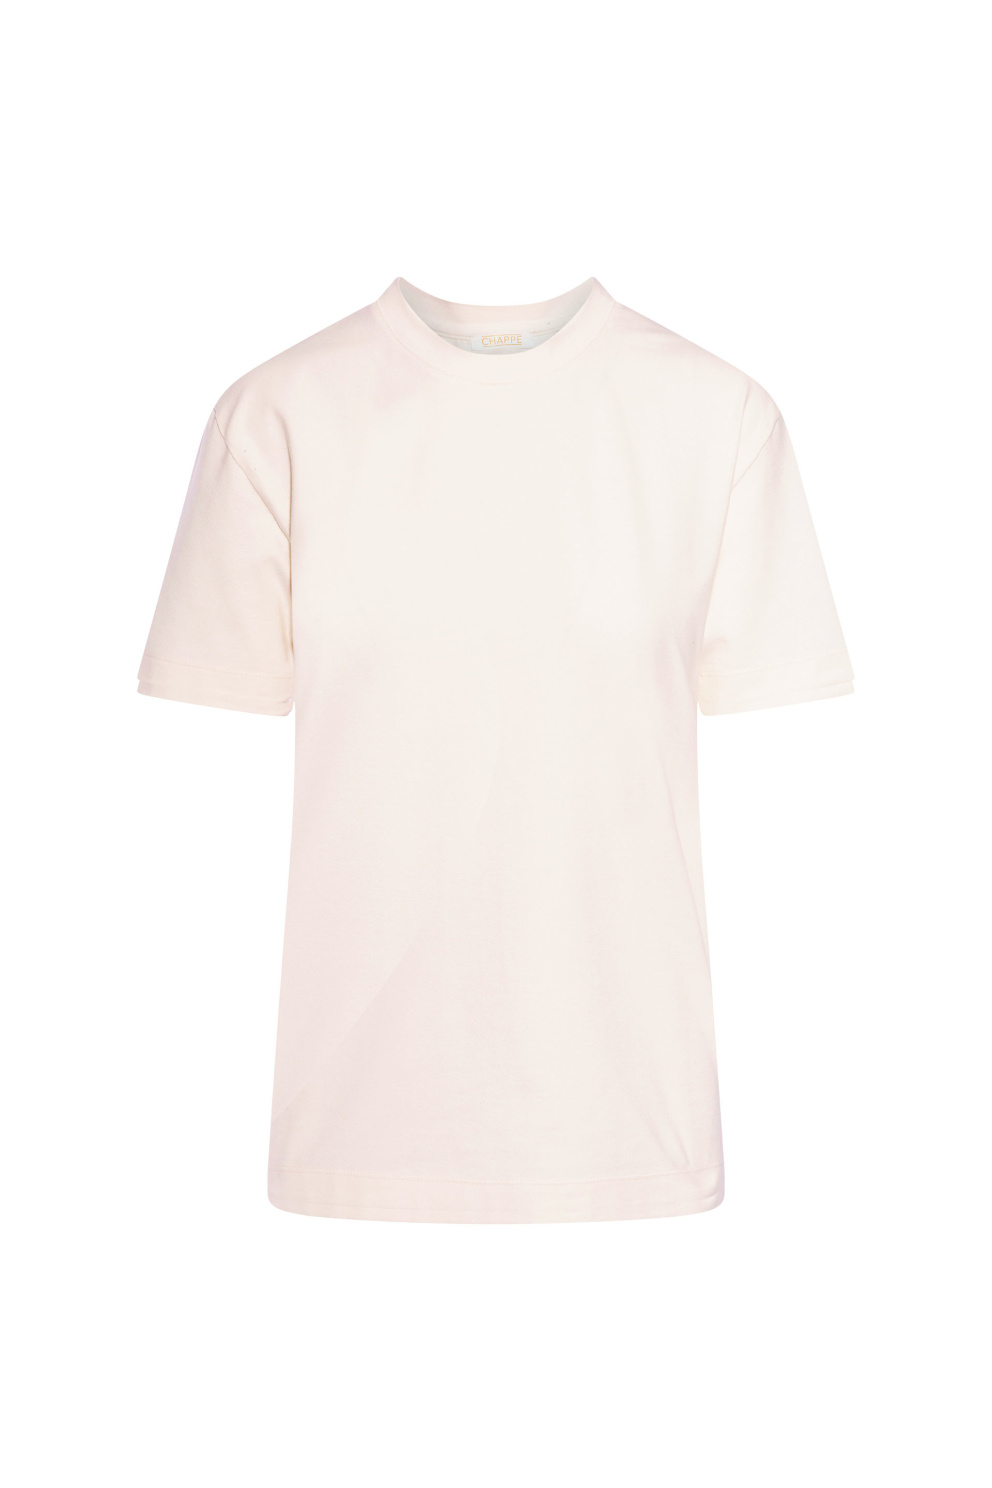 Basic bílé tričko, CHAPPE, 1900 Kč